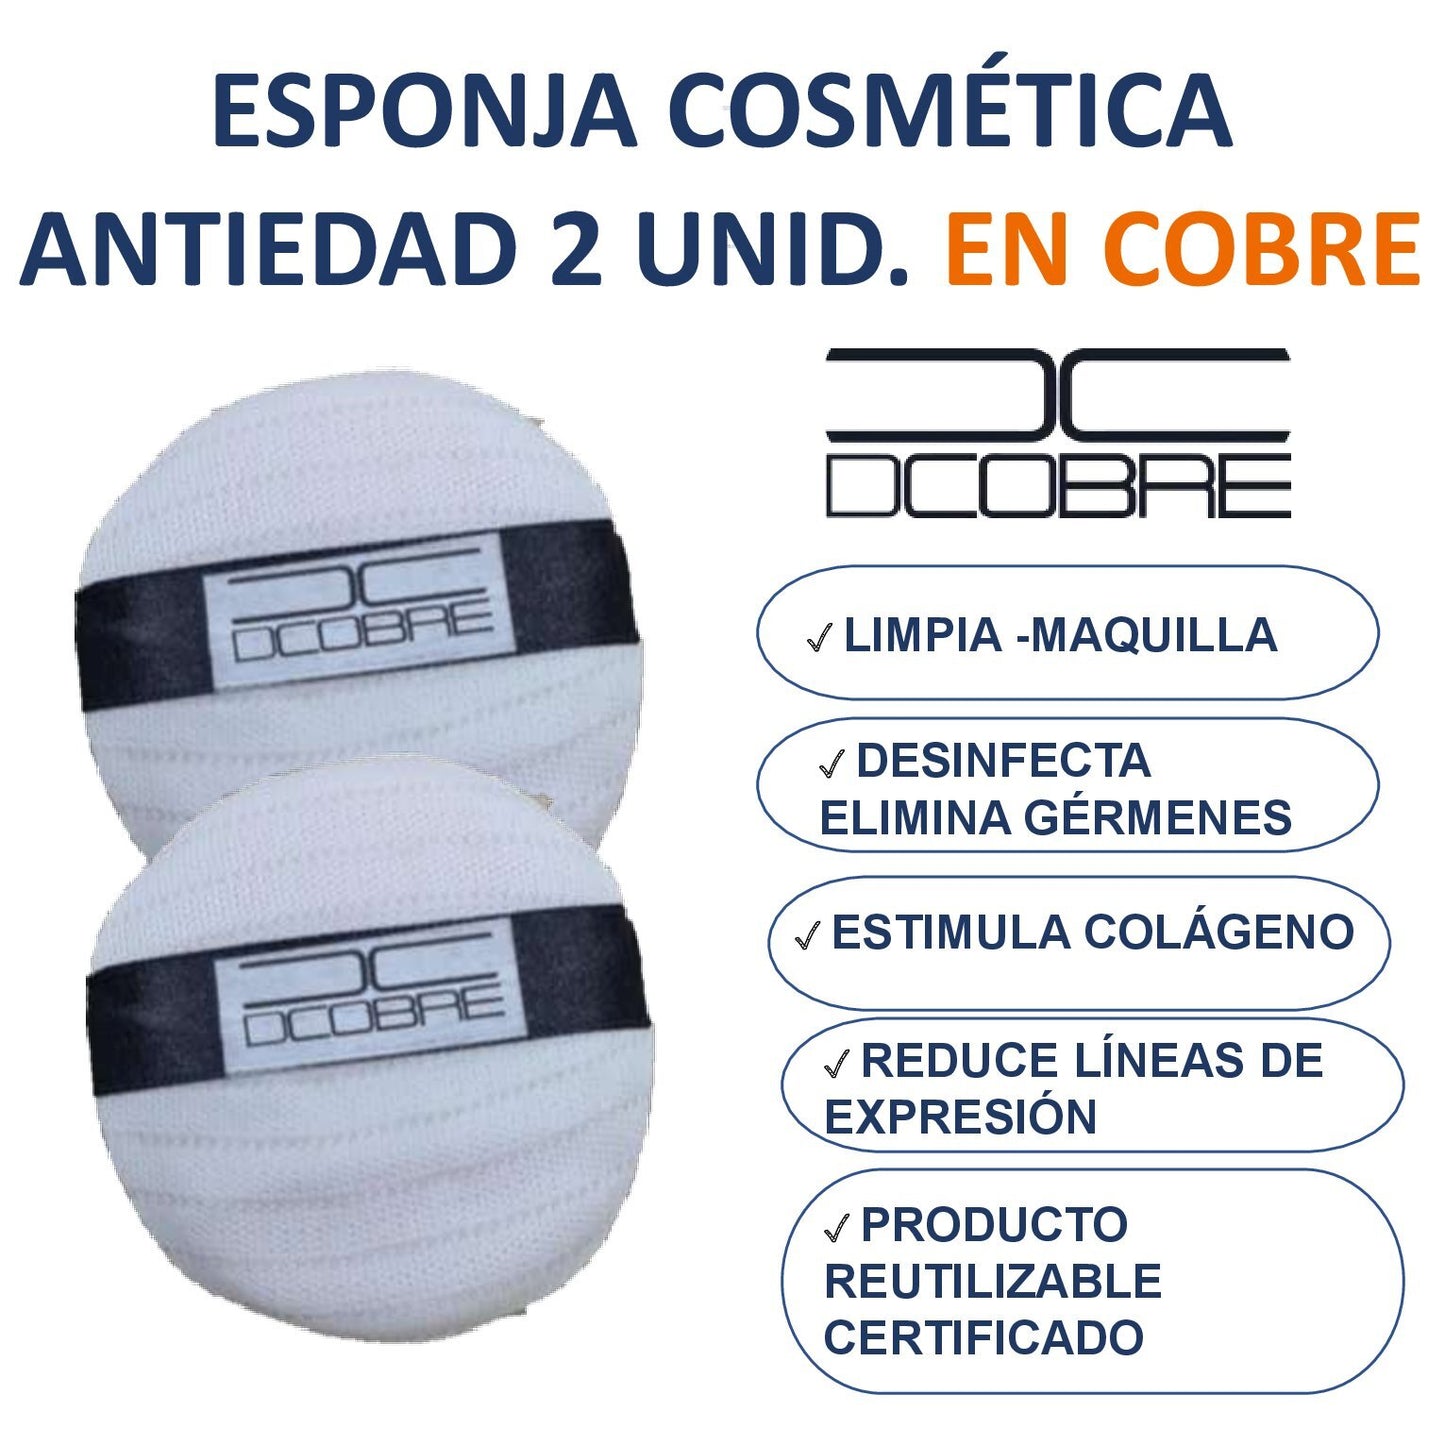 Esponja cosmética Purifica la piel y estimula colageno, 2 unid. en Cobre.